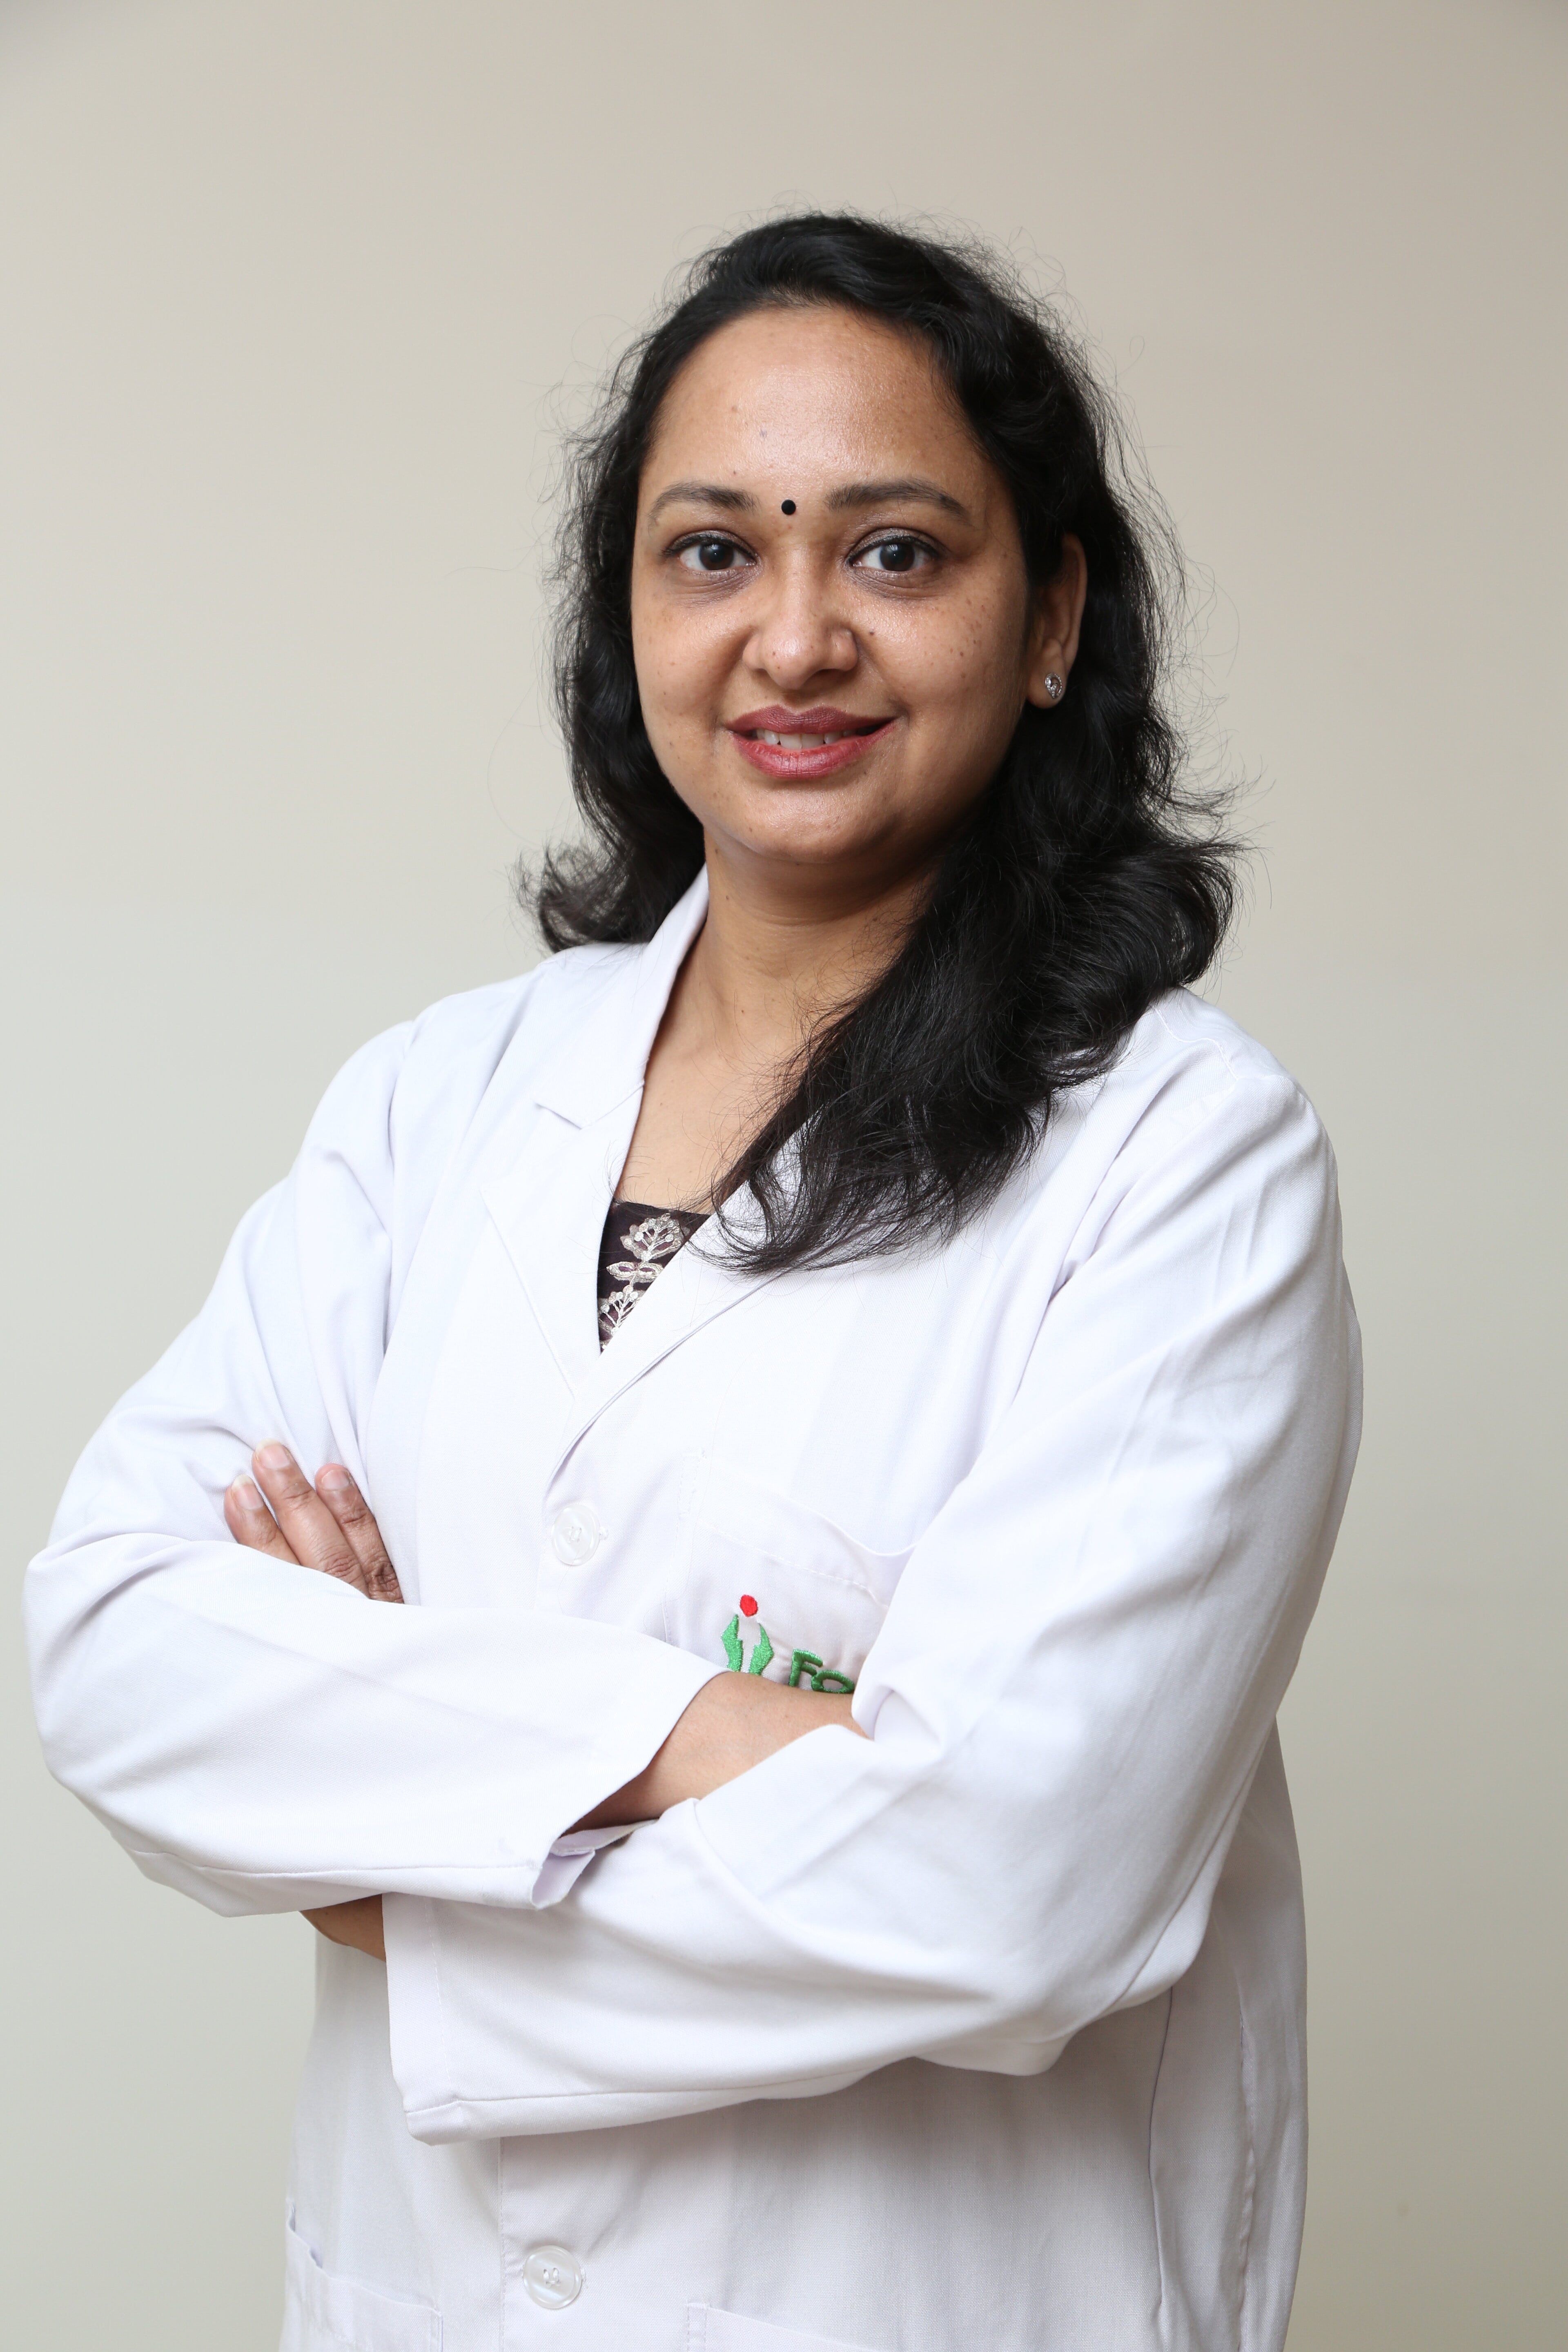 Priya Goyal博士